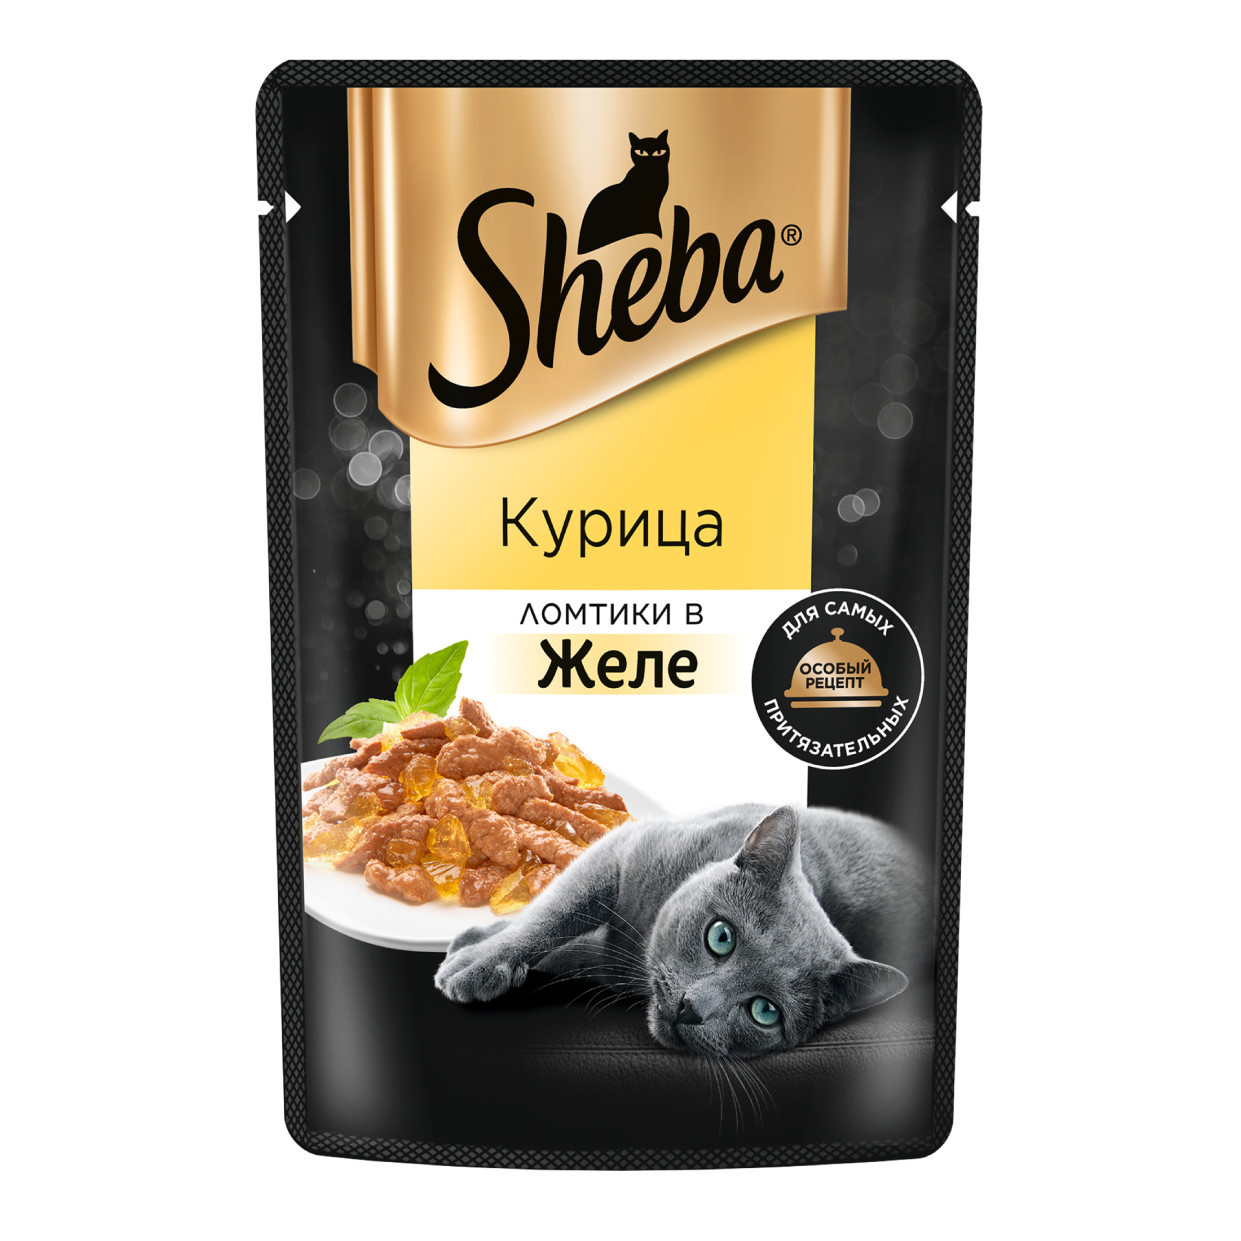 Sheba влажный корм для кошек «Ломтики в желе с курицей» (75 г) Sheba влажный корм для кошек «Ломтики в желе с курицей» (75 г) - фото 1